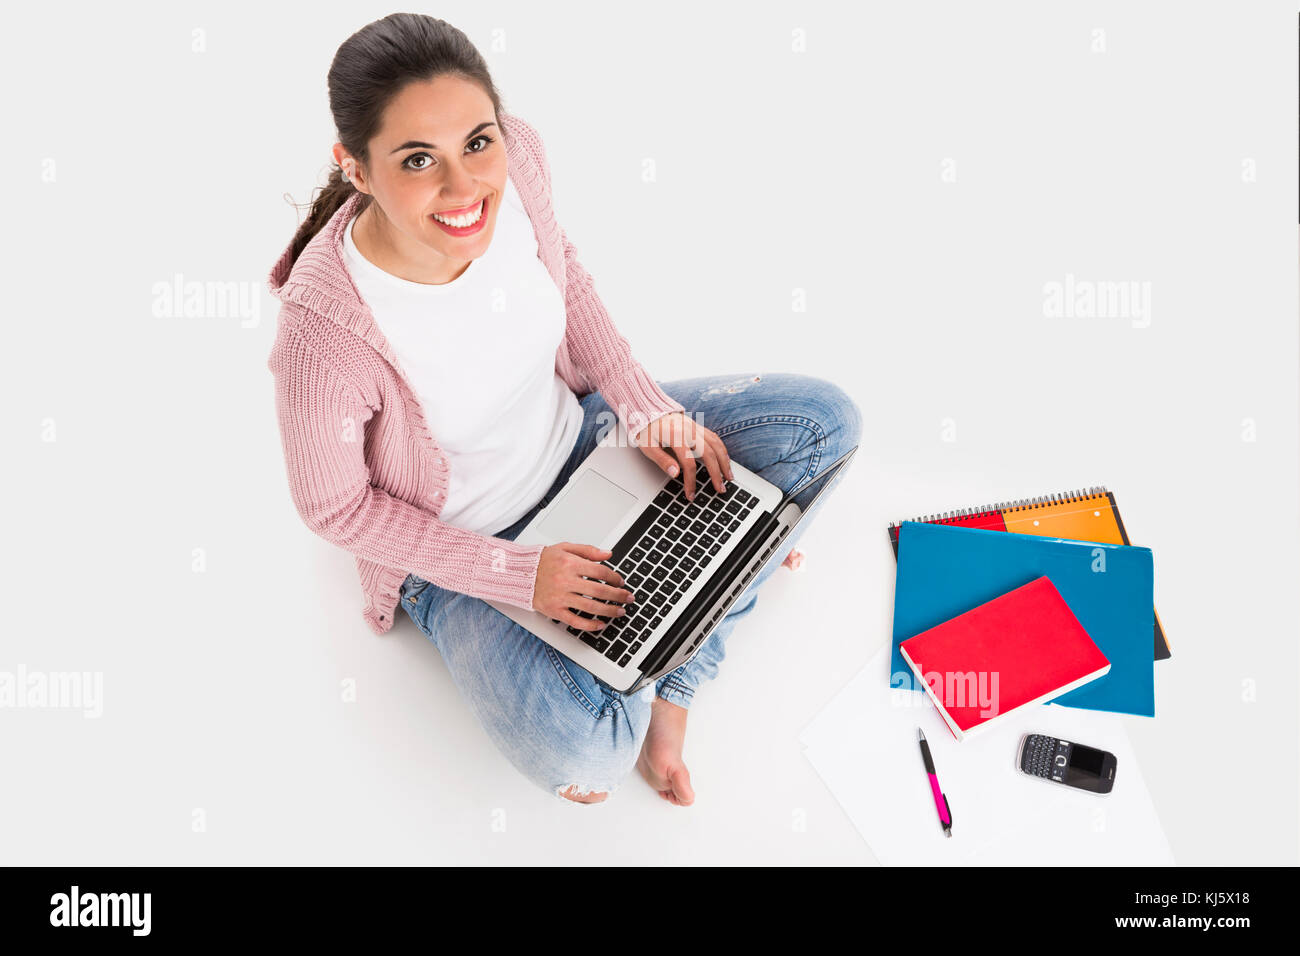 Giovane studentessa seduta con le gambe incrociate a lavorare con un computer portatile, isolato su sfondo bianco Foto Stock